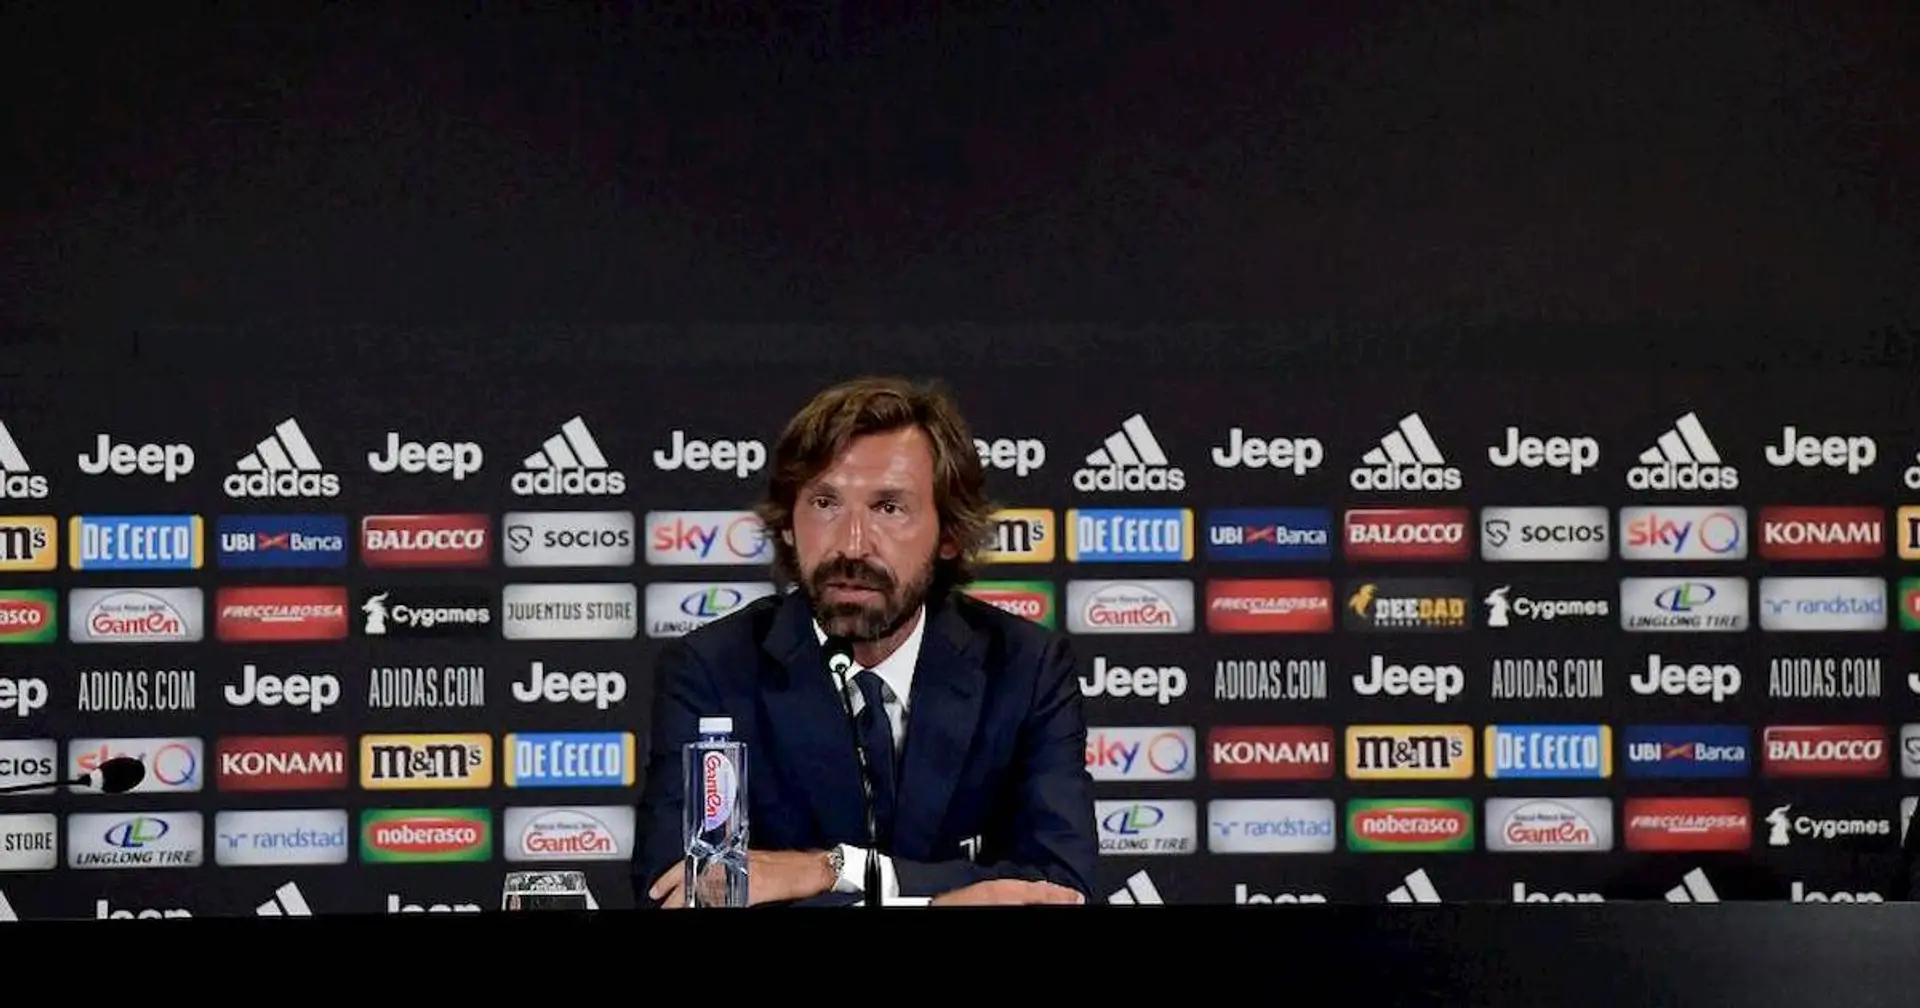 Lo staff di Andrea Pirlo ed i possibili nomi per la dirigenza: il "Maestro" non sarà l'unico volto nuovo della Juventus